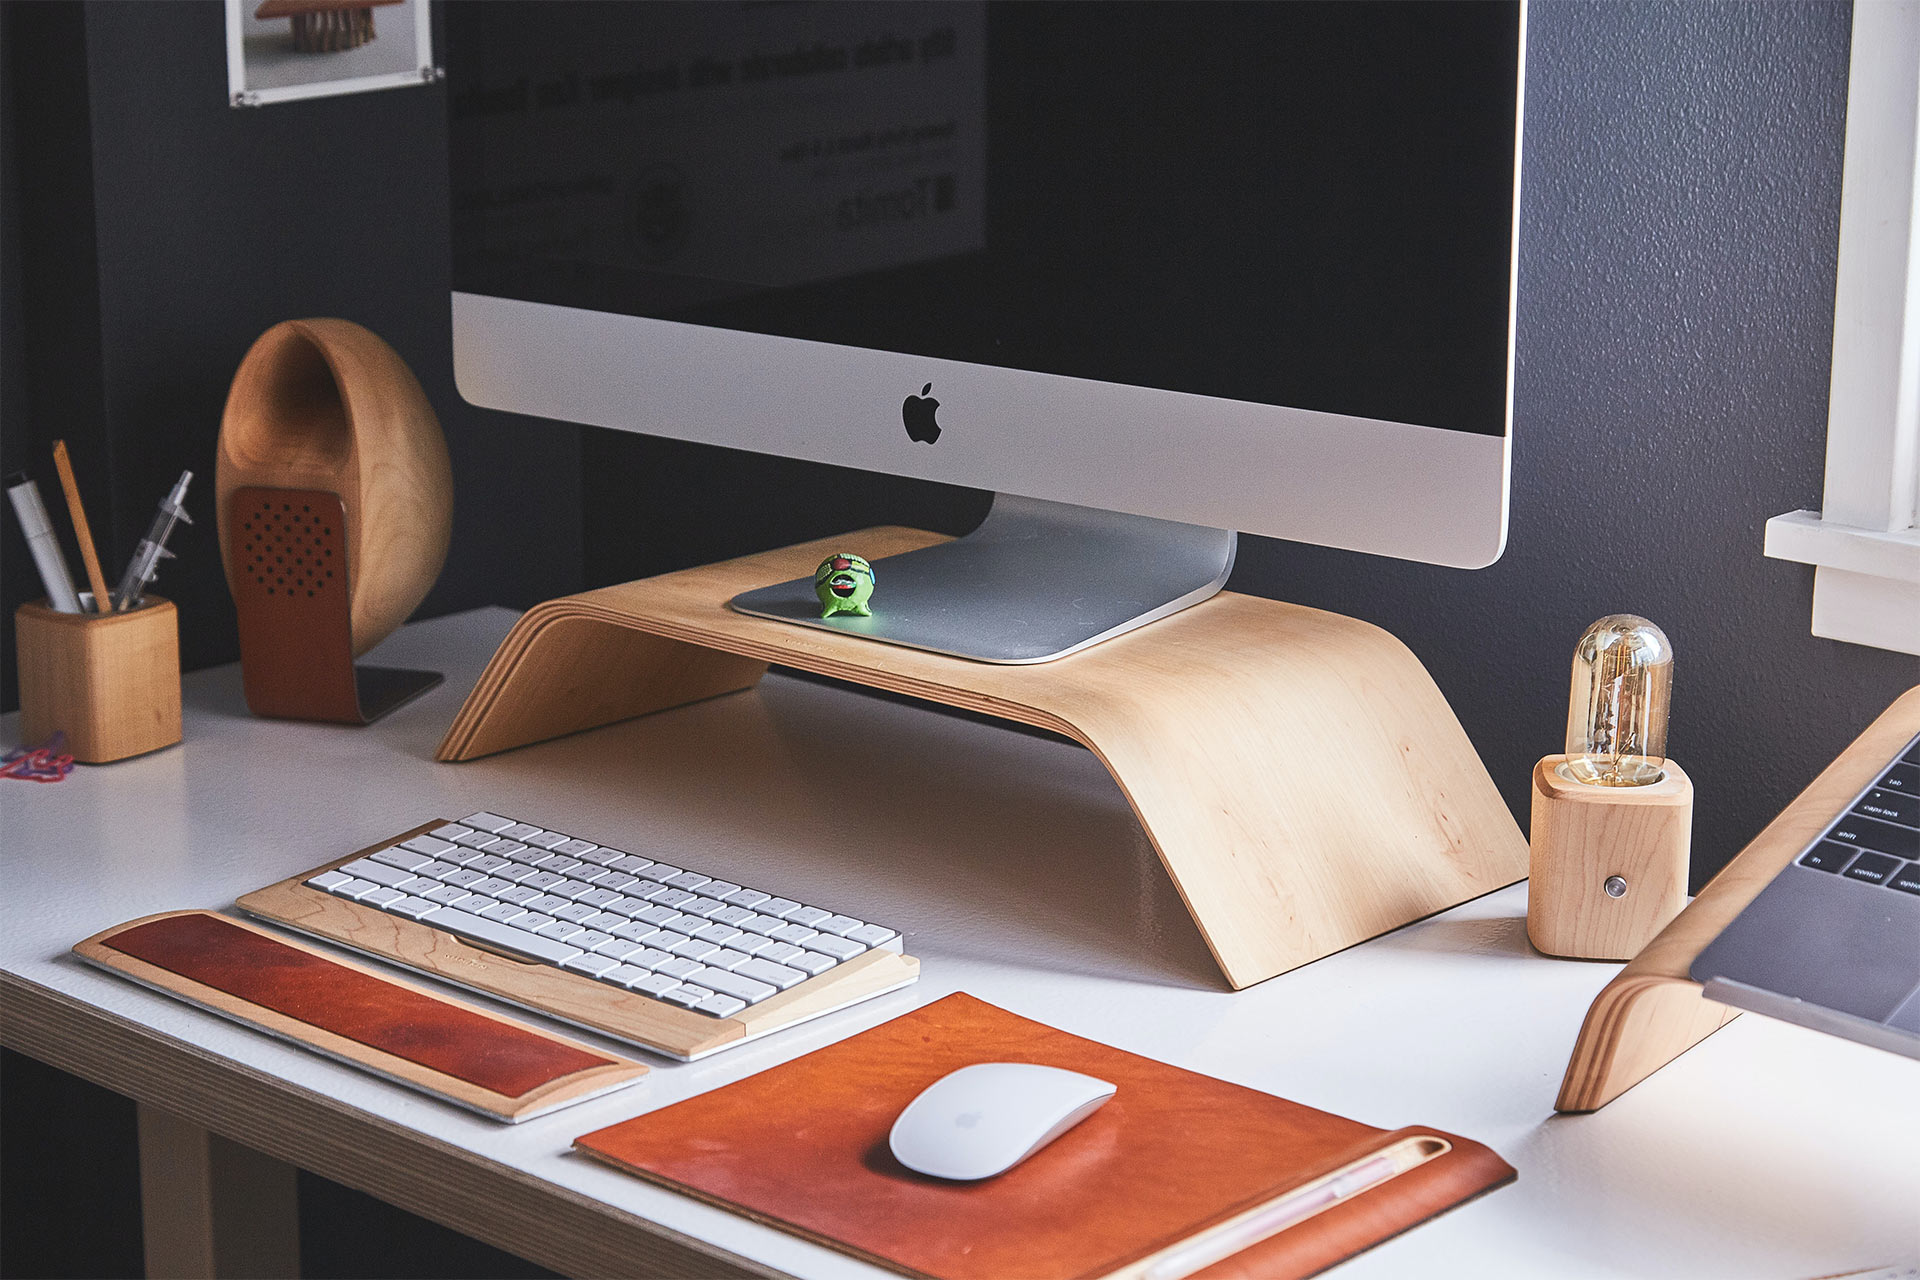 Una foto de un monitor de iMac sobre un soporte de madera en un escritorio con un teclado y un ratón inalámbricos.